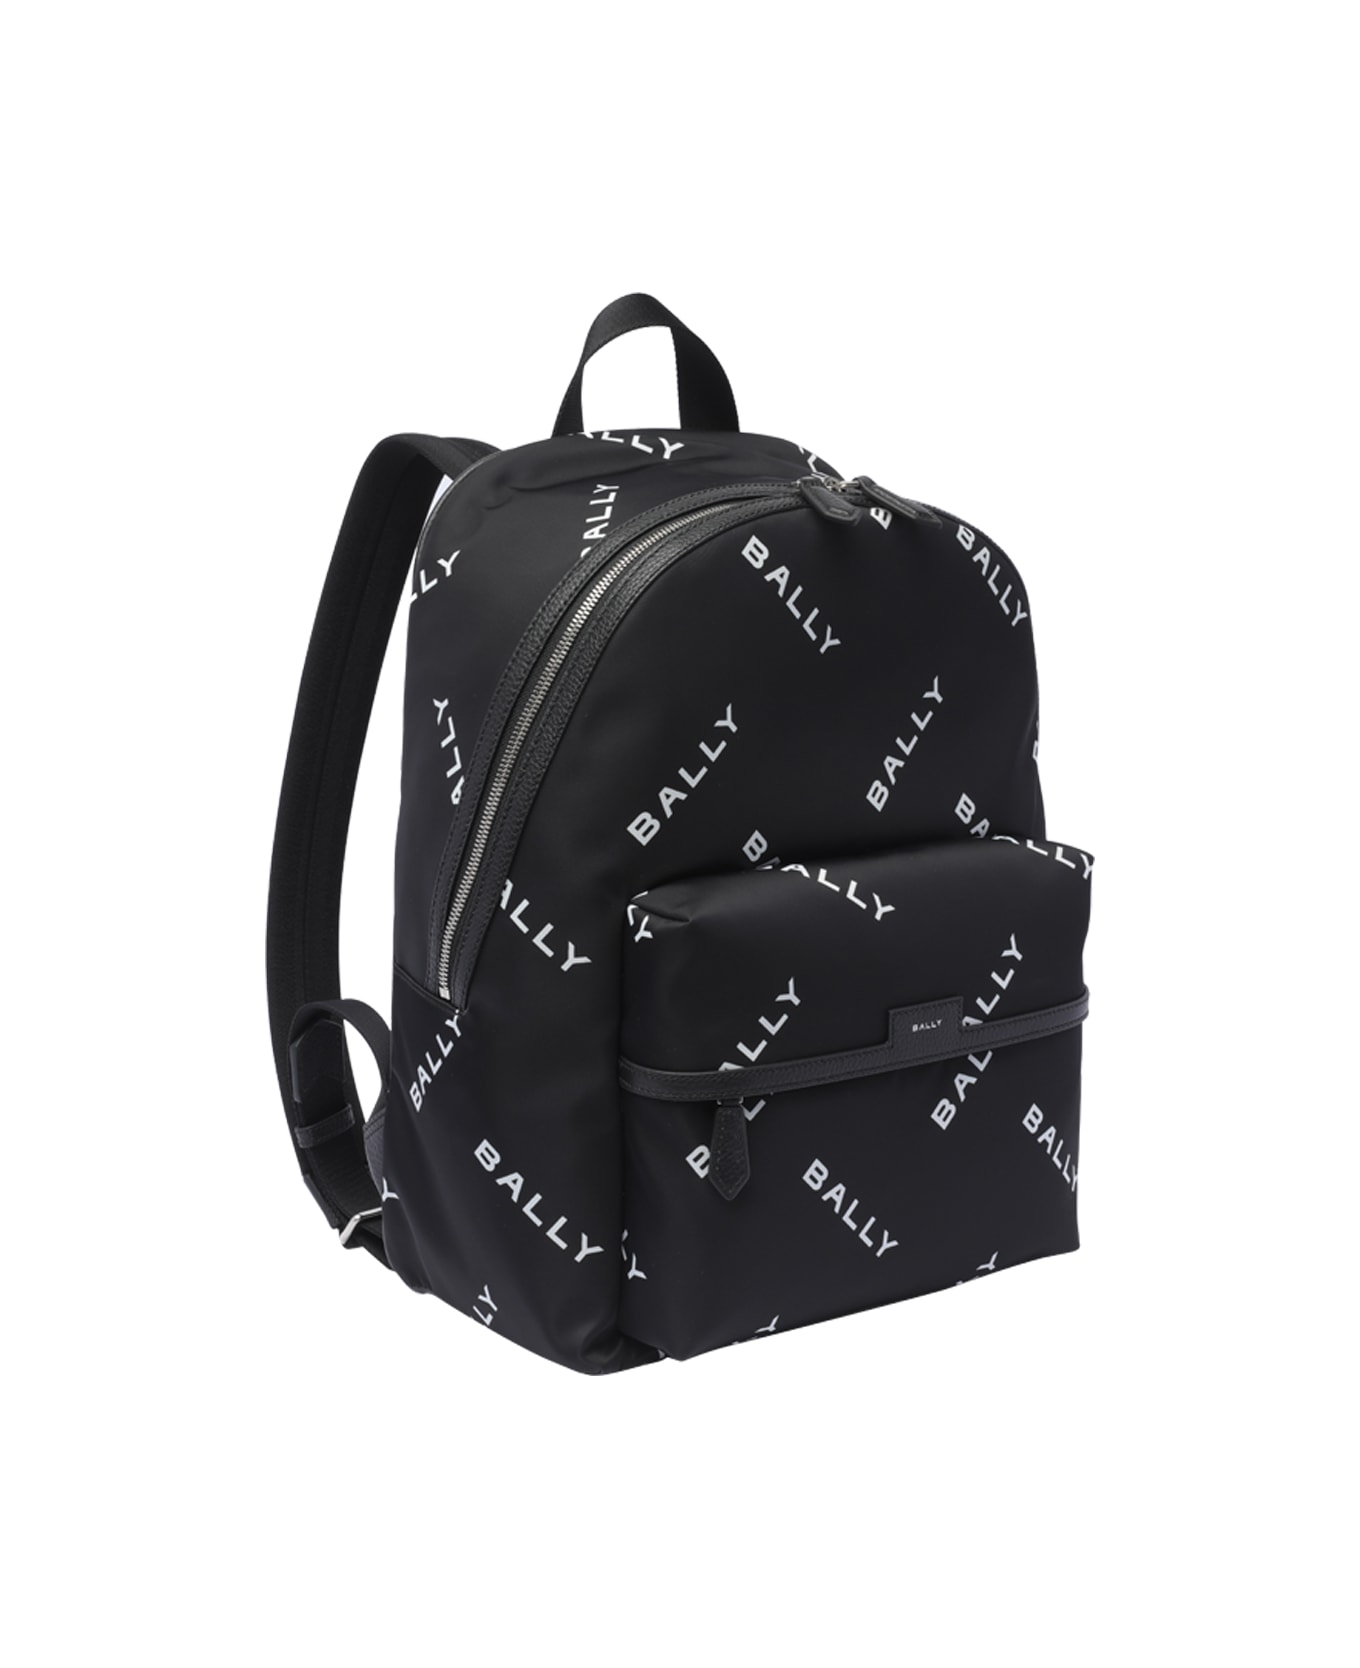 Bally Code Backpack - Black